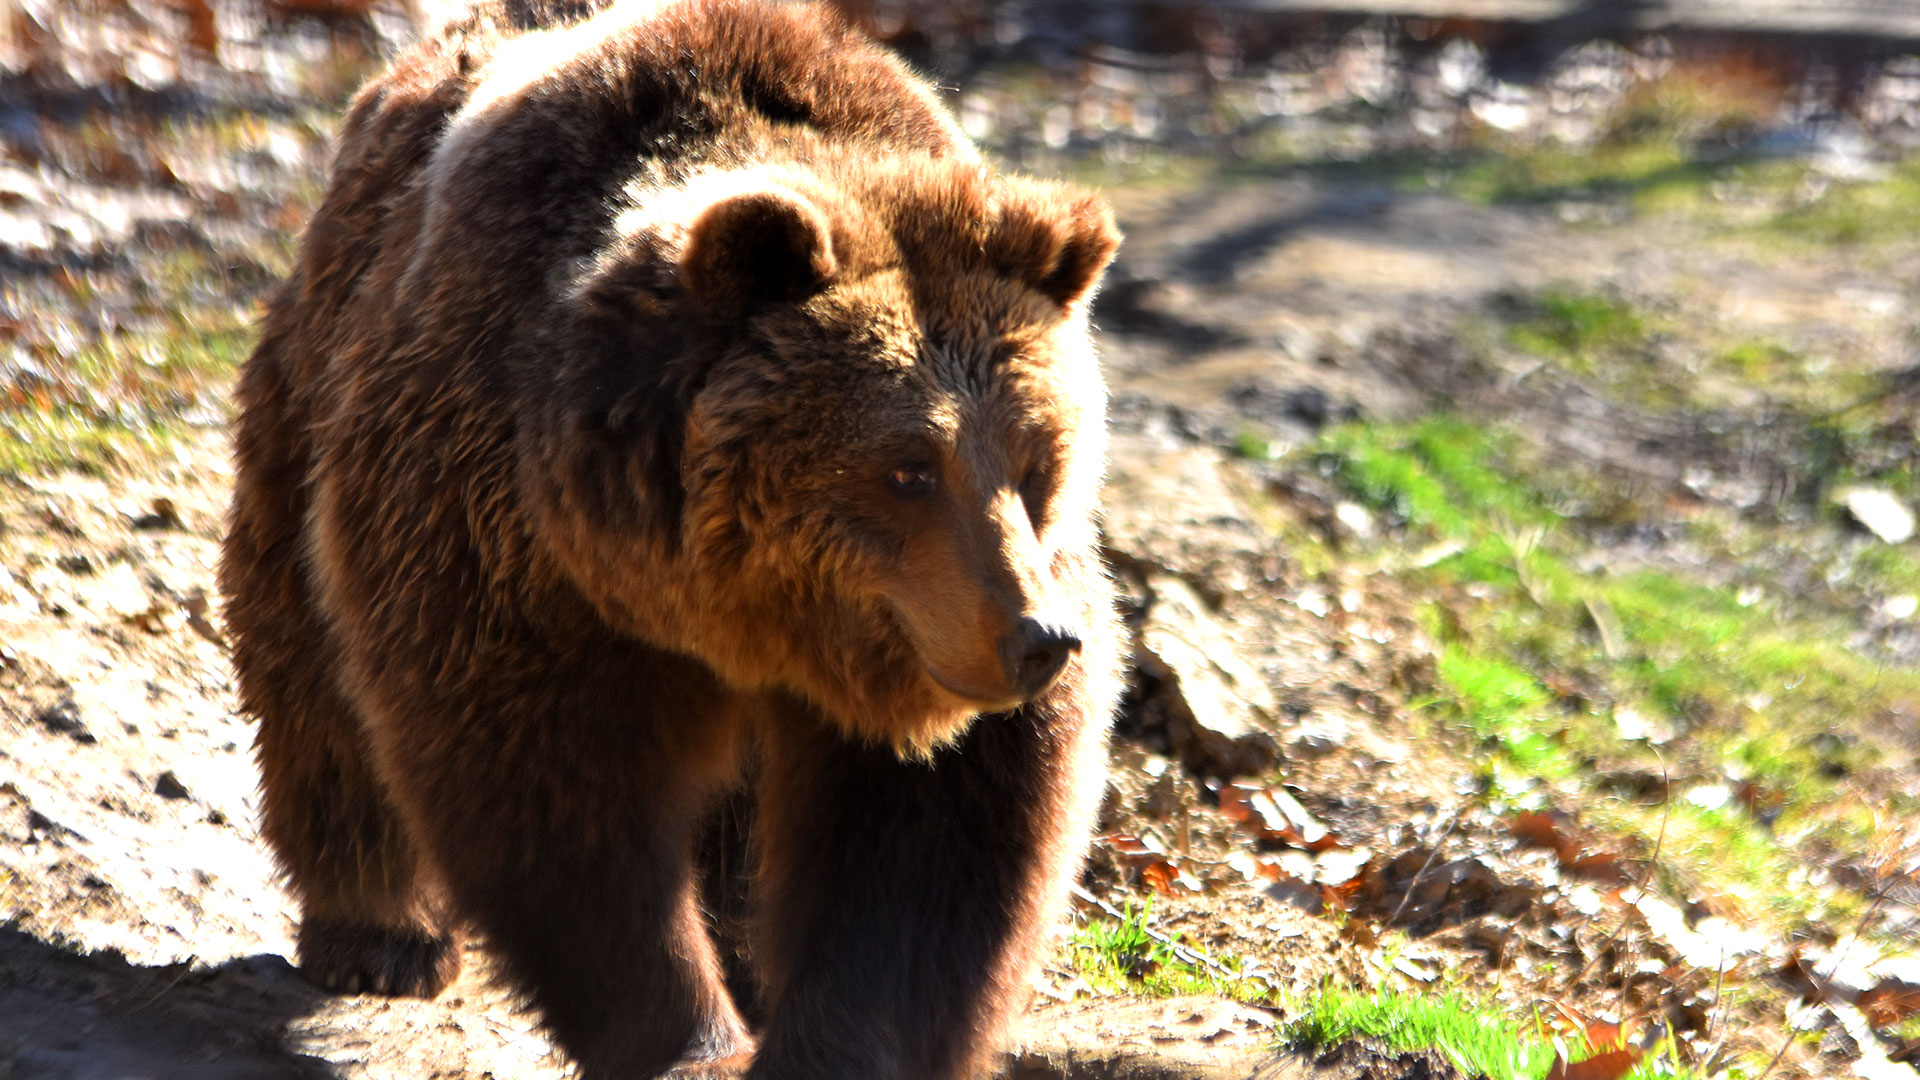 Ministerul Mediului a publicat un raport cu privire la numarul ursilor care traiesc pe teritoriul tarii noastre